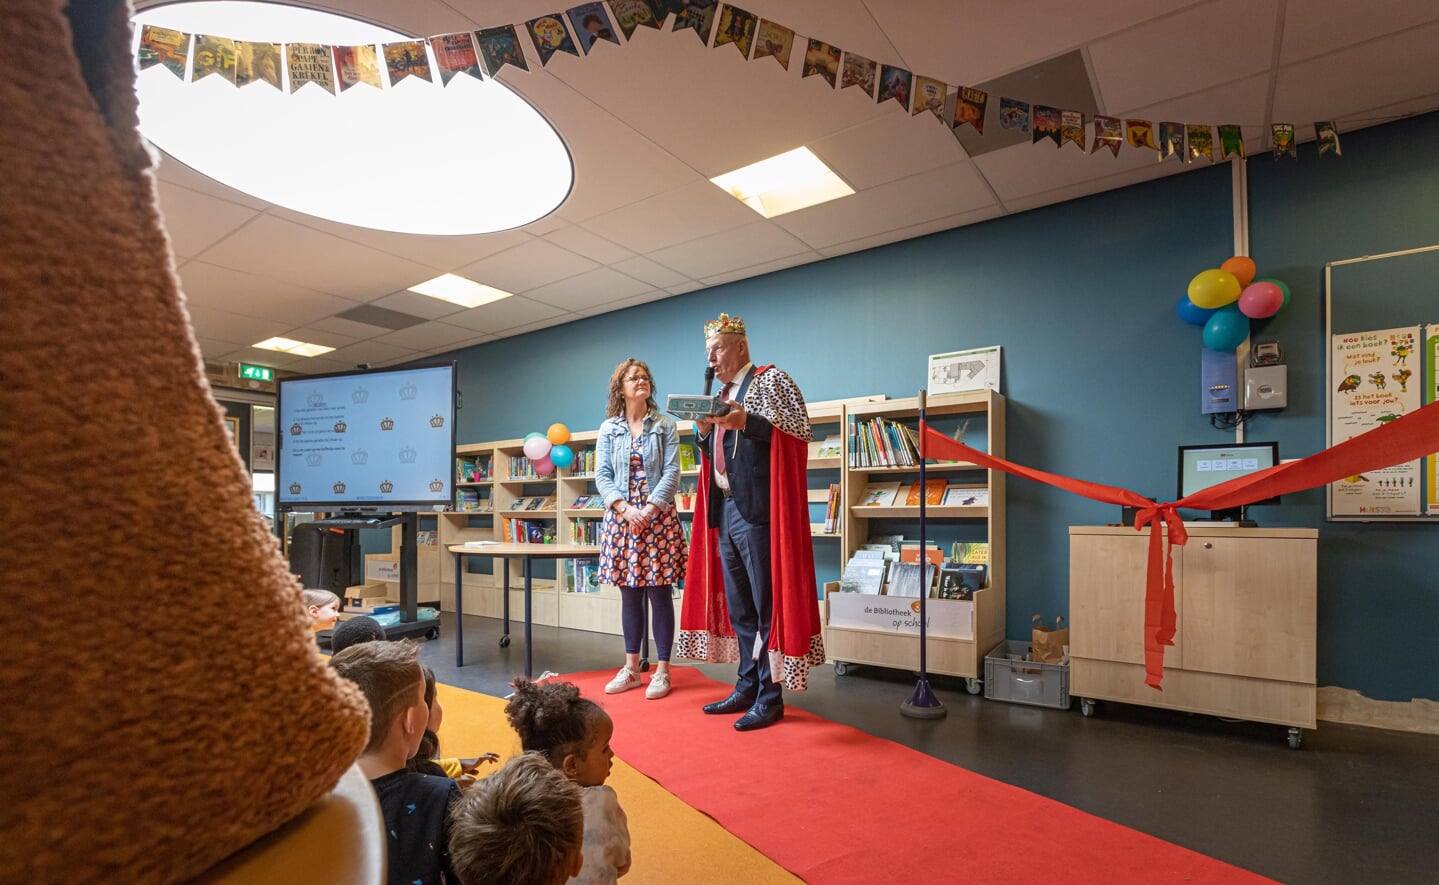 Niemand minder dan 'koning' Alexander Willem opende dinsdag de nieuwe bibliotheek van de Prinses Amaliaschool.